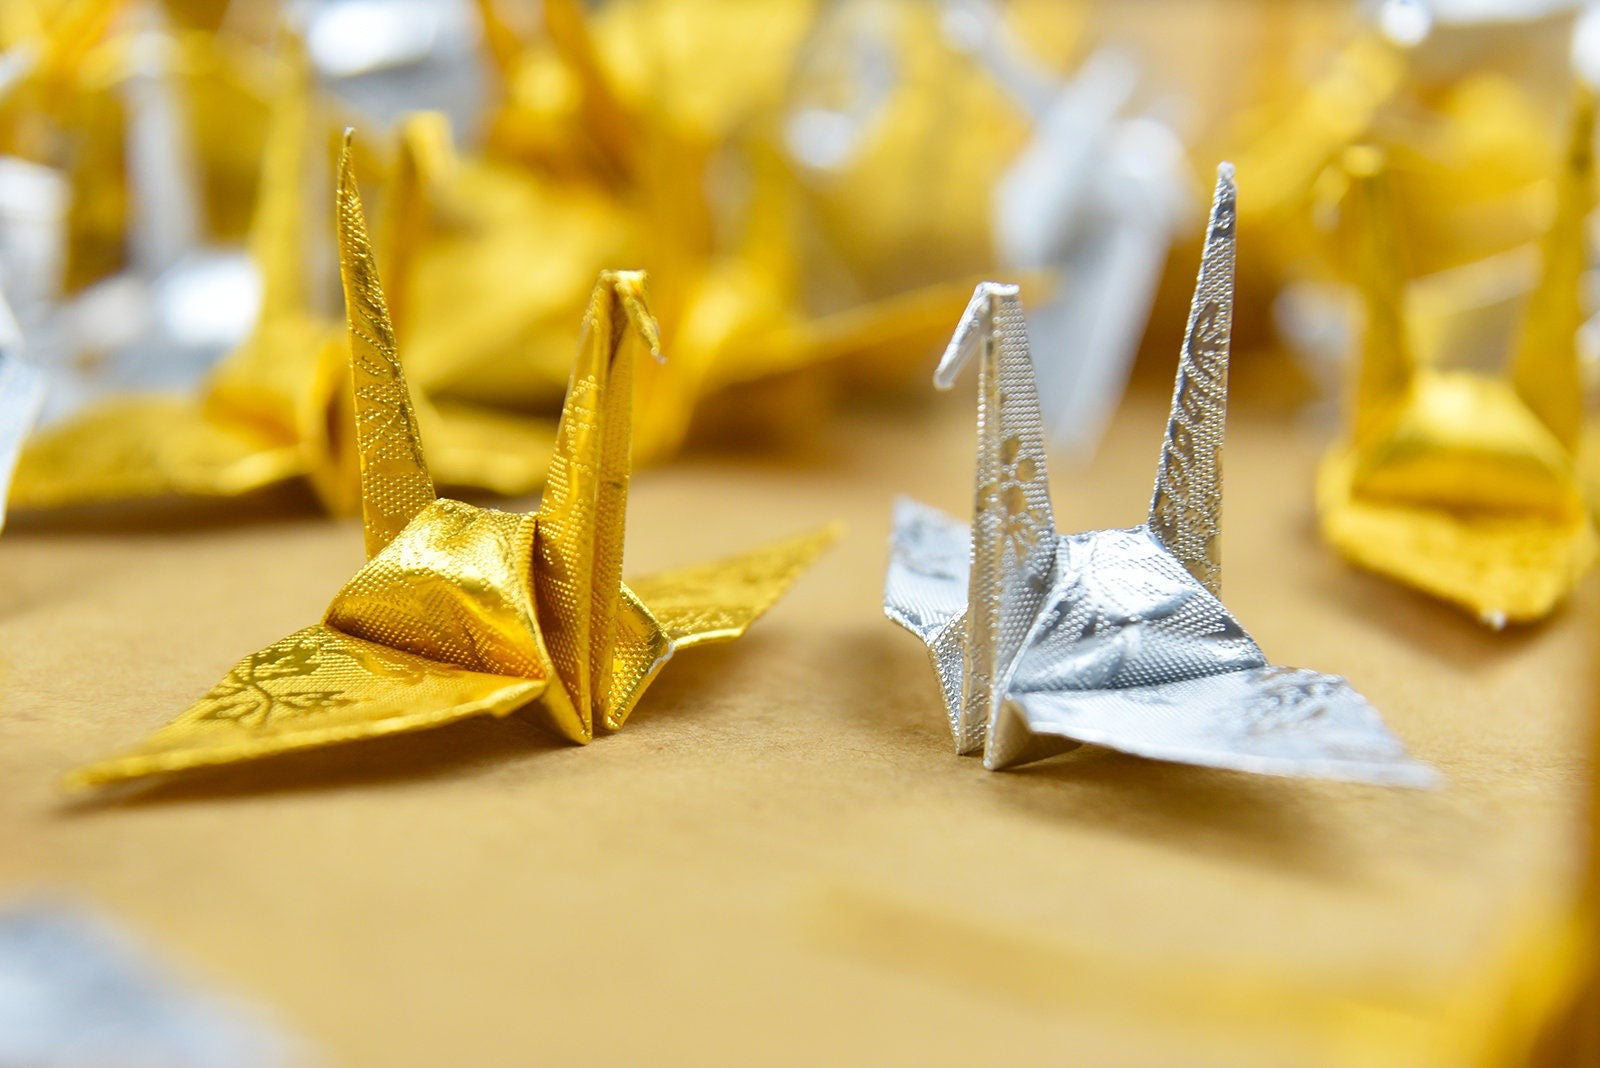 100 grullas de origami - doradas y plateadas con patrón de rosas - 7,5 cm (3 pulgadas) - para decoración de bodas, bodas japonesas